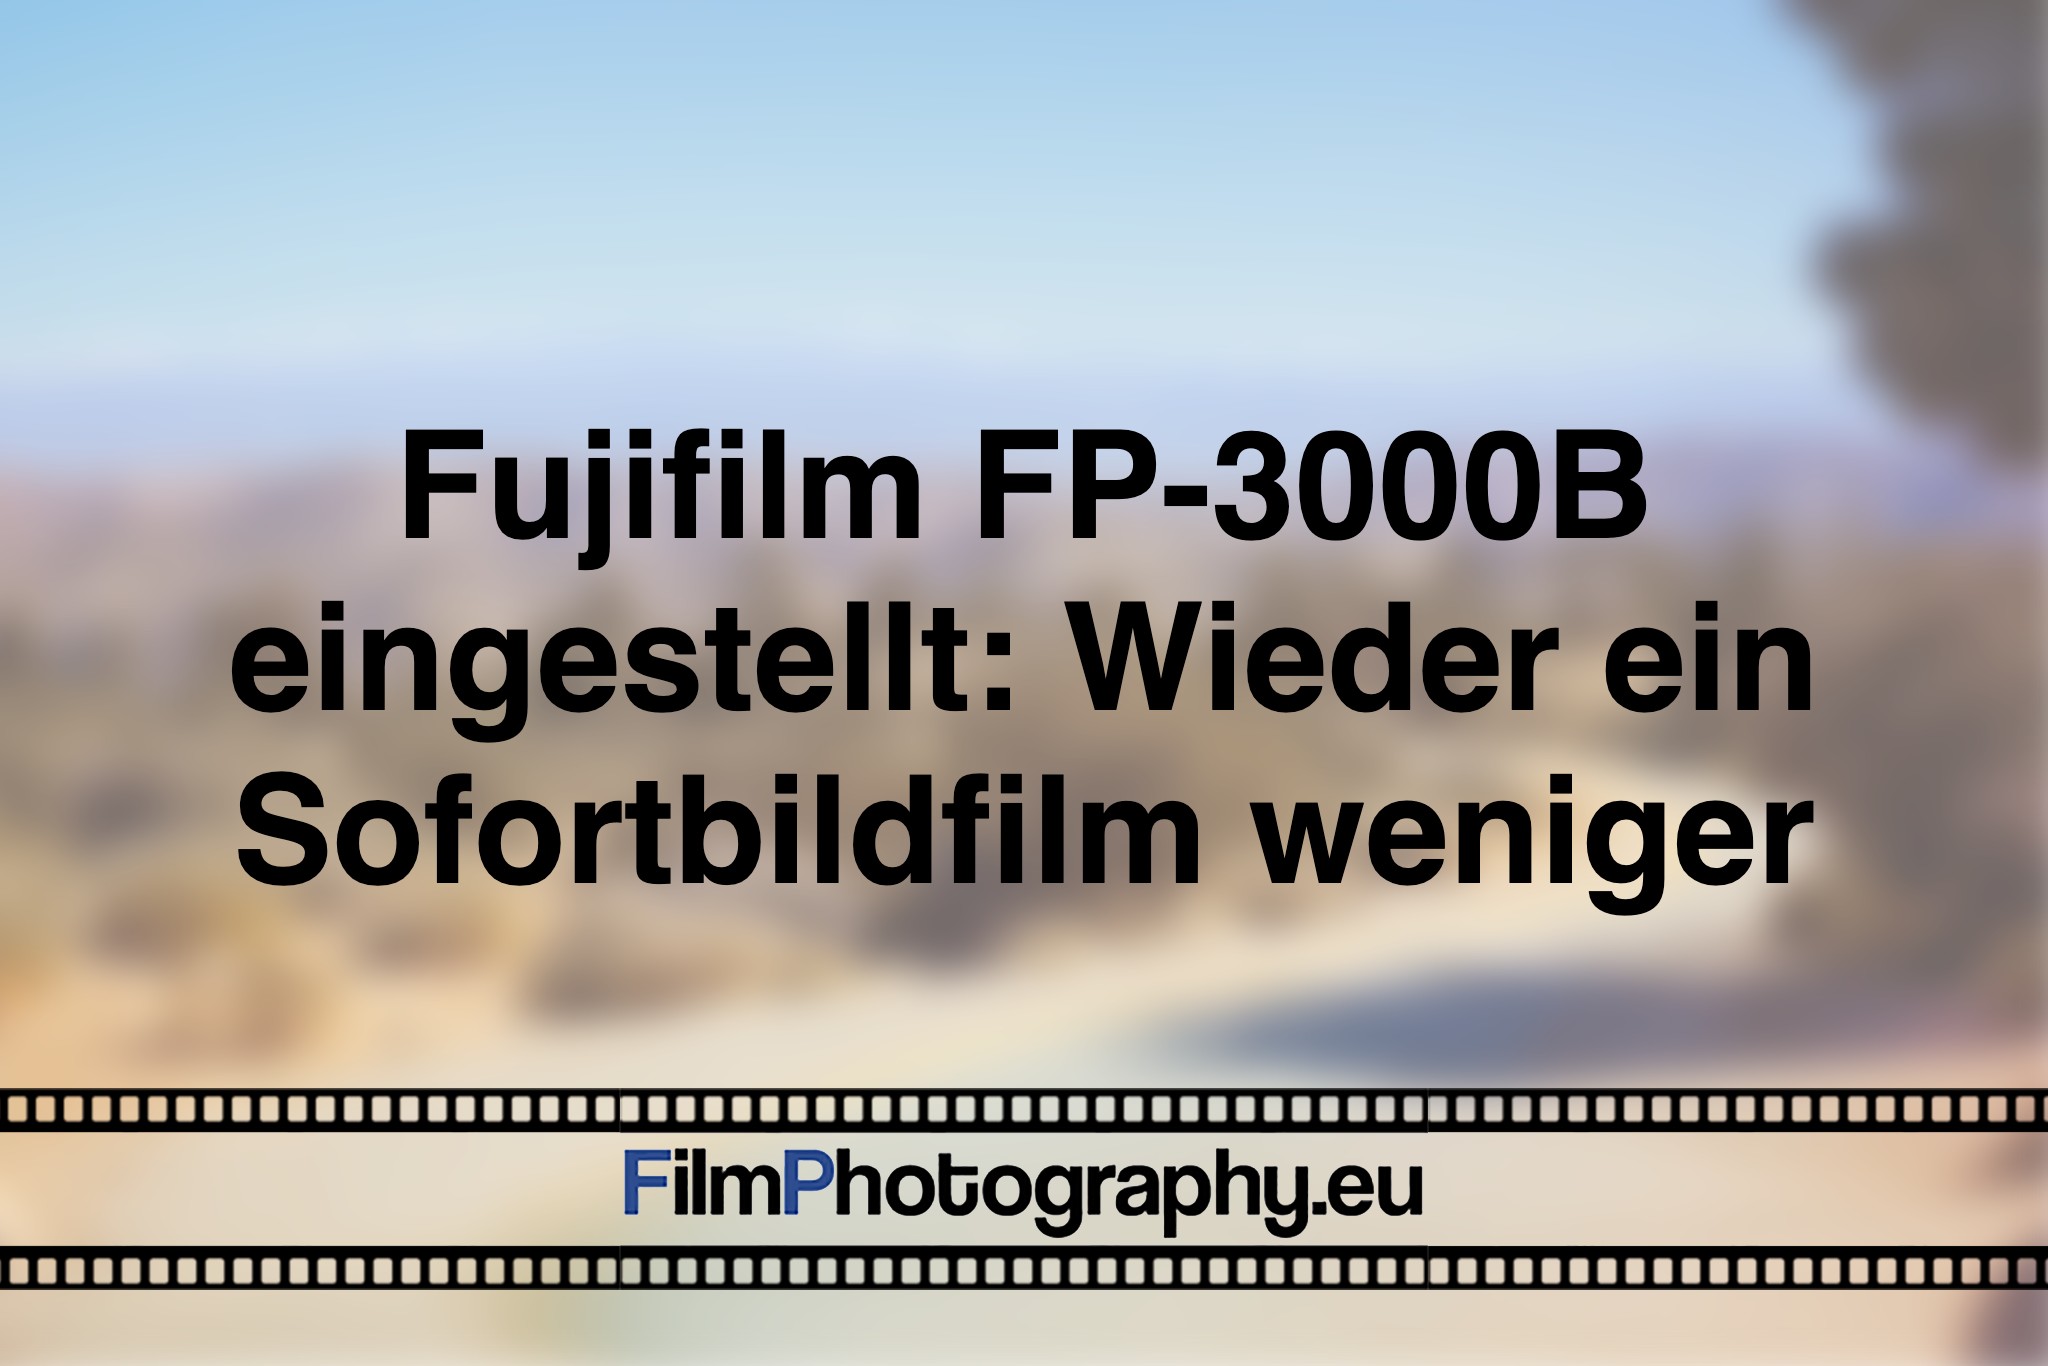 fujifilm-fp-3000b-eingestellt-wieder-ein-sofortbildfilm-weniger-foto-bnv